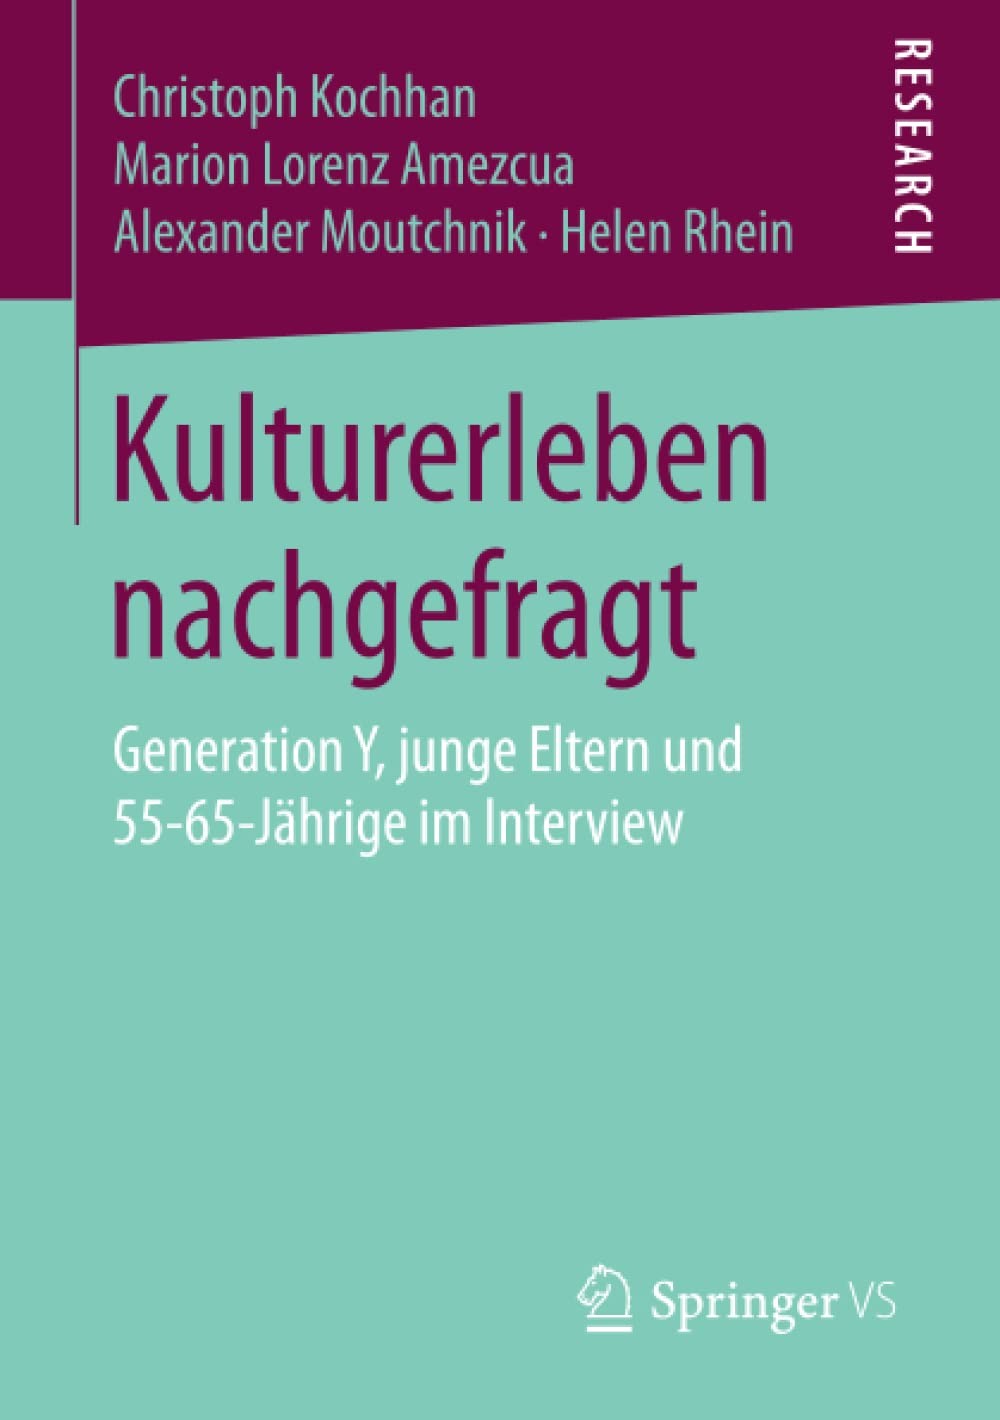 Kulturerleben nachgefragt: Generation Y, junge Eltern und 55-65-Jährige im Interview